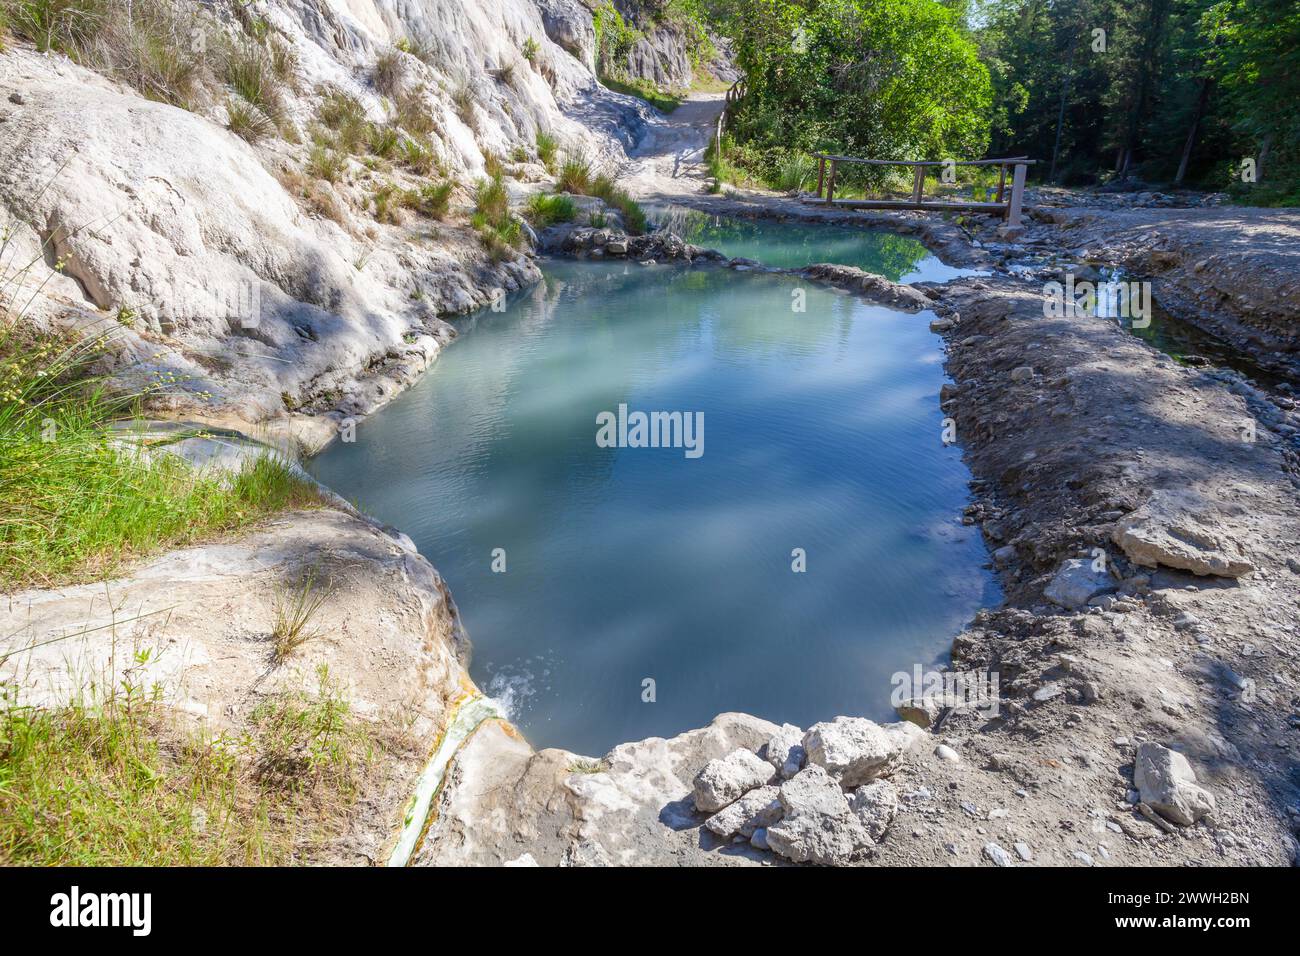 Piscine naturelle Bagni San Filippo avec eau turquoise et roches blanches en Toscane, Italie Banque D'Images